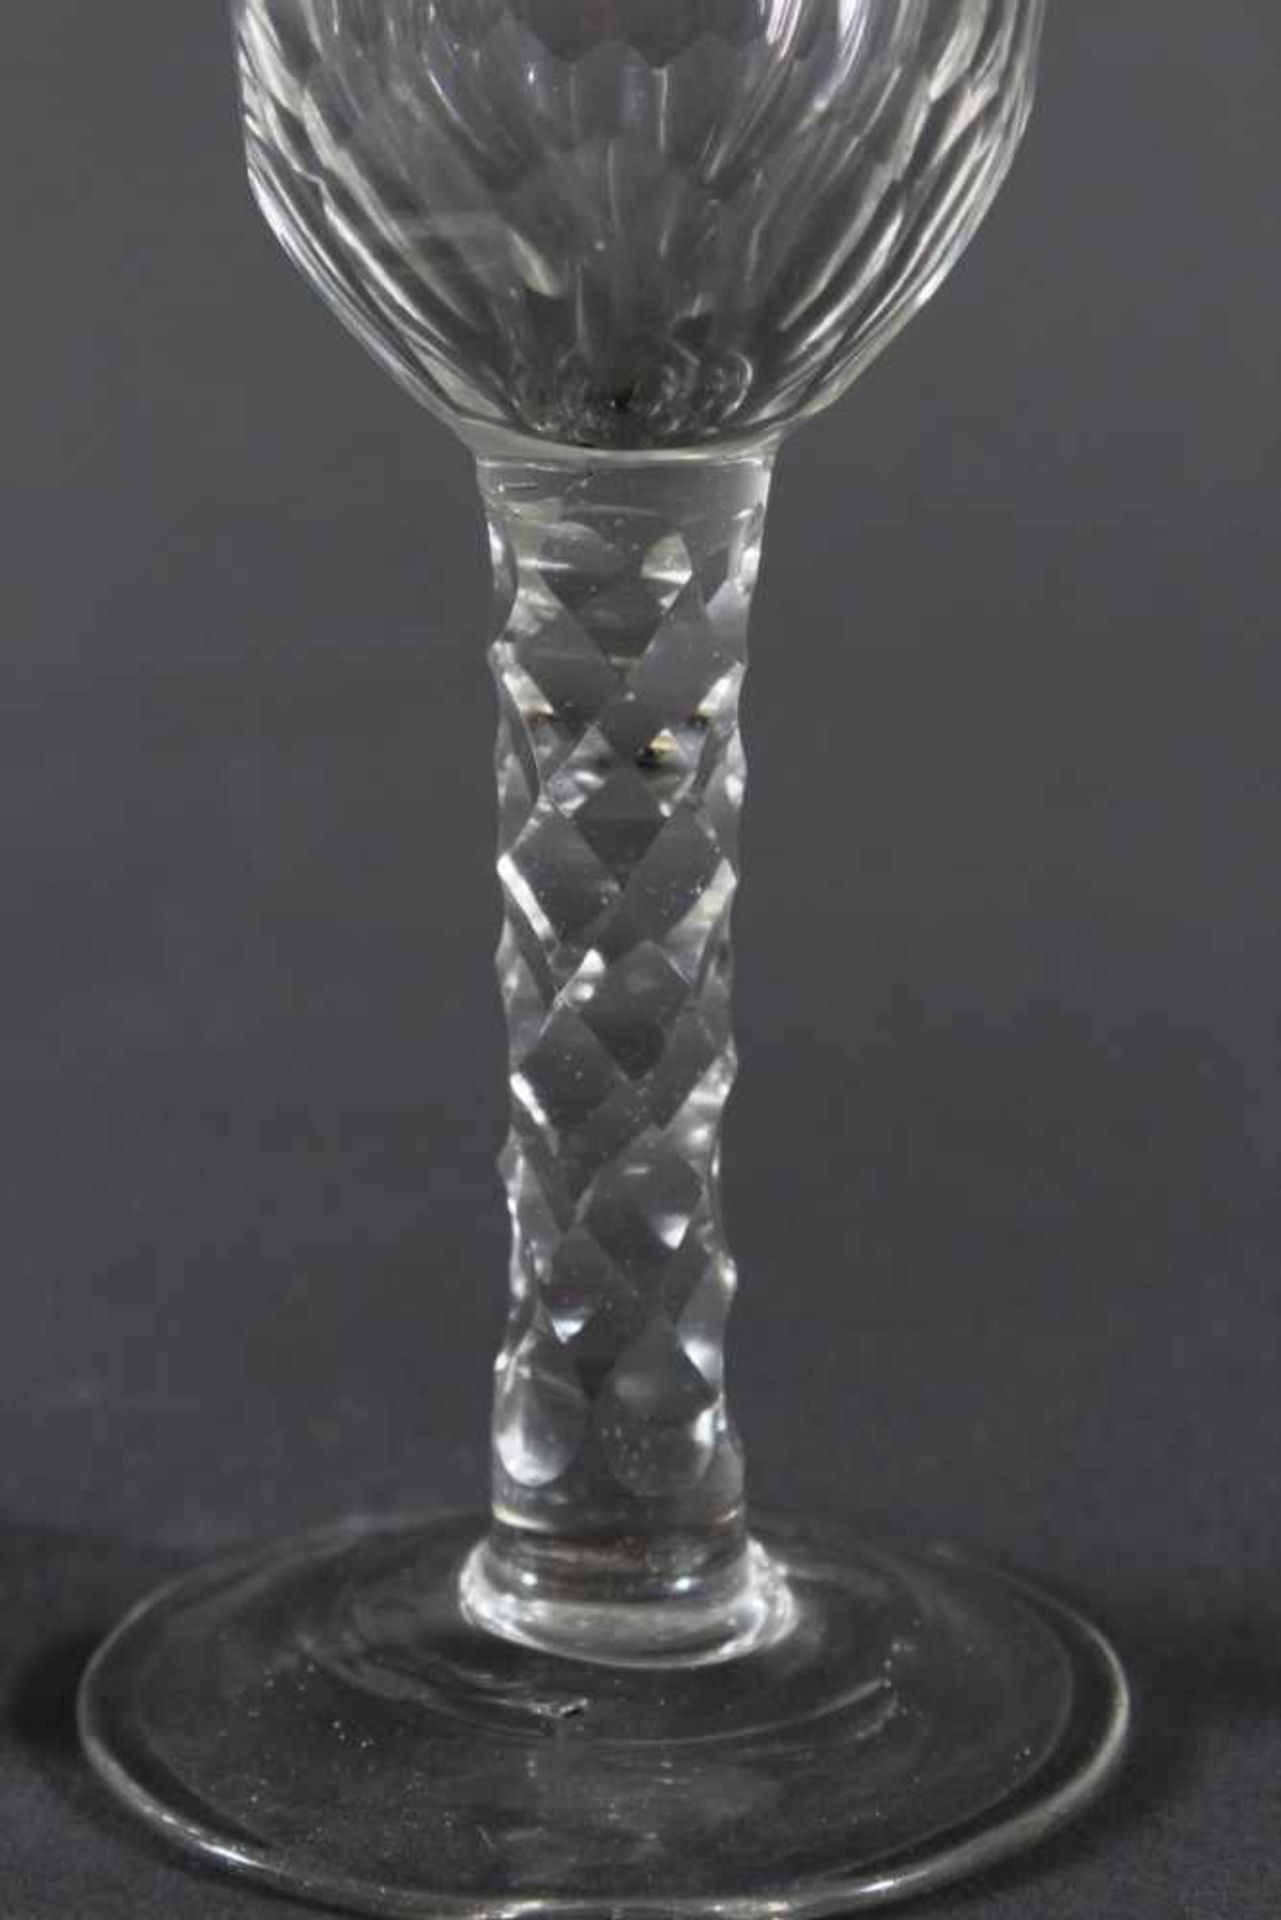 Barock Gläser, 18. Jh.Farbloses Glas, facettierte Kuppa, über rundem Scheibenfuß. Rauten- - Bild 4 aus 5